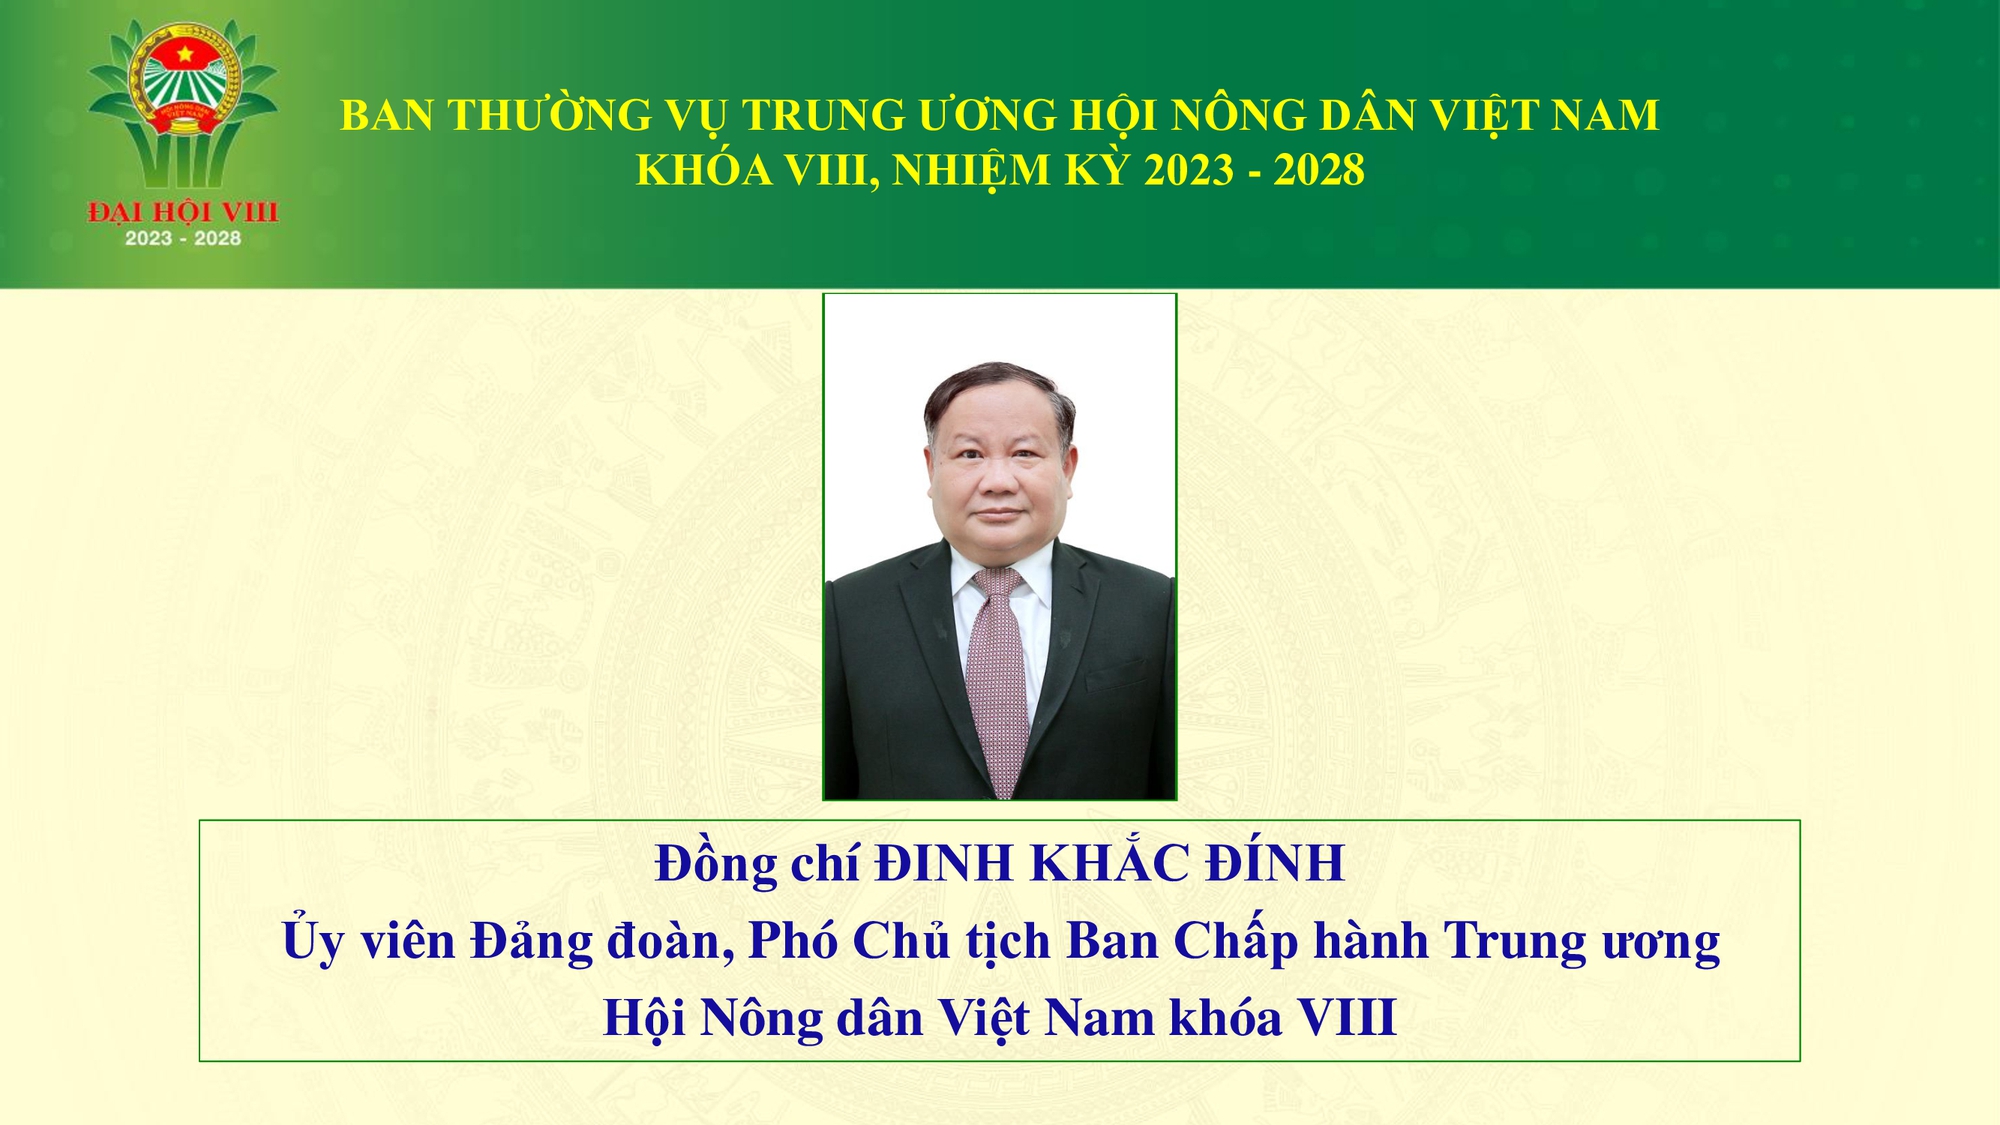 Danh sách Ban Thường vụ Trung ương Hội Nông dân Việt Nam khoá VIII- Ảnh 3.